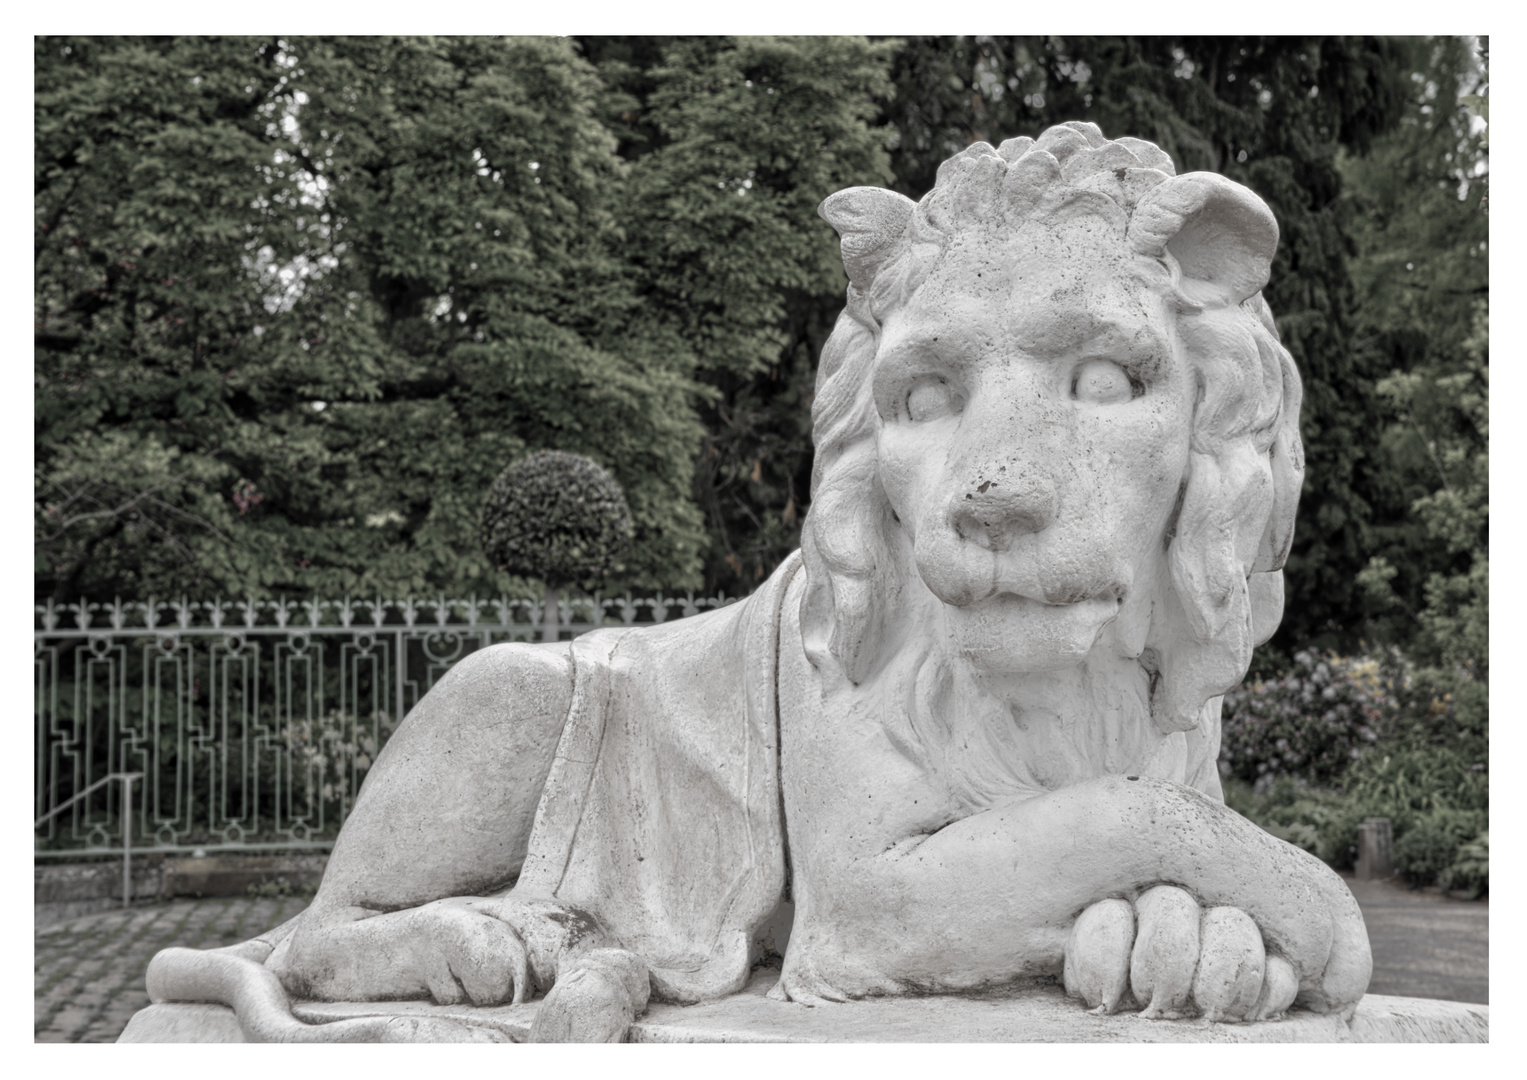 Löwenstatue im Benrather Schloß Park